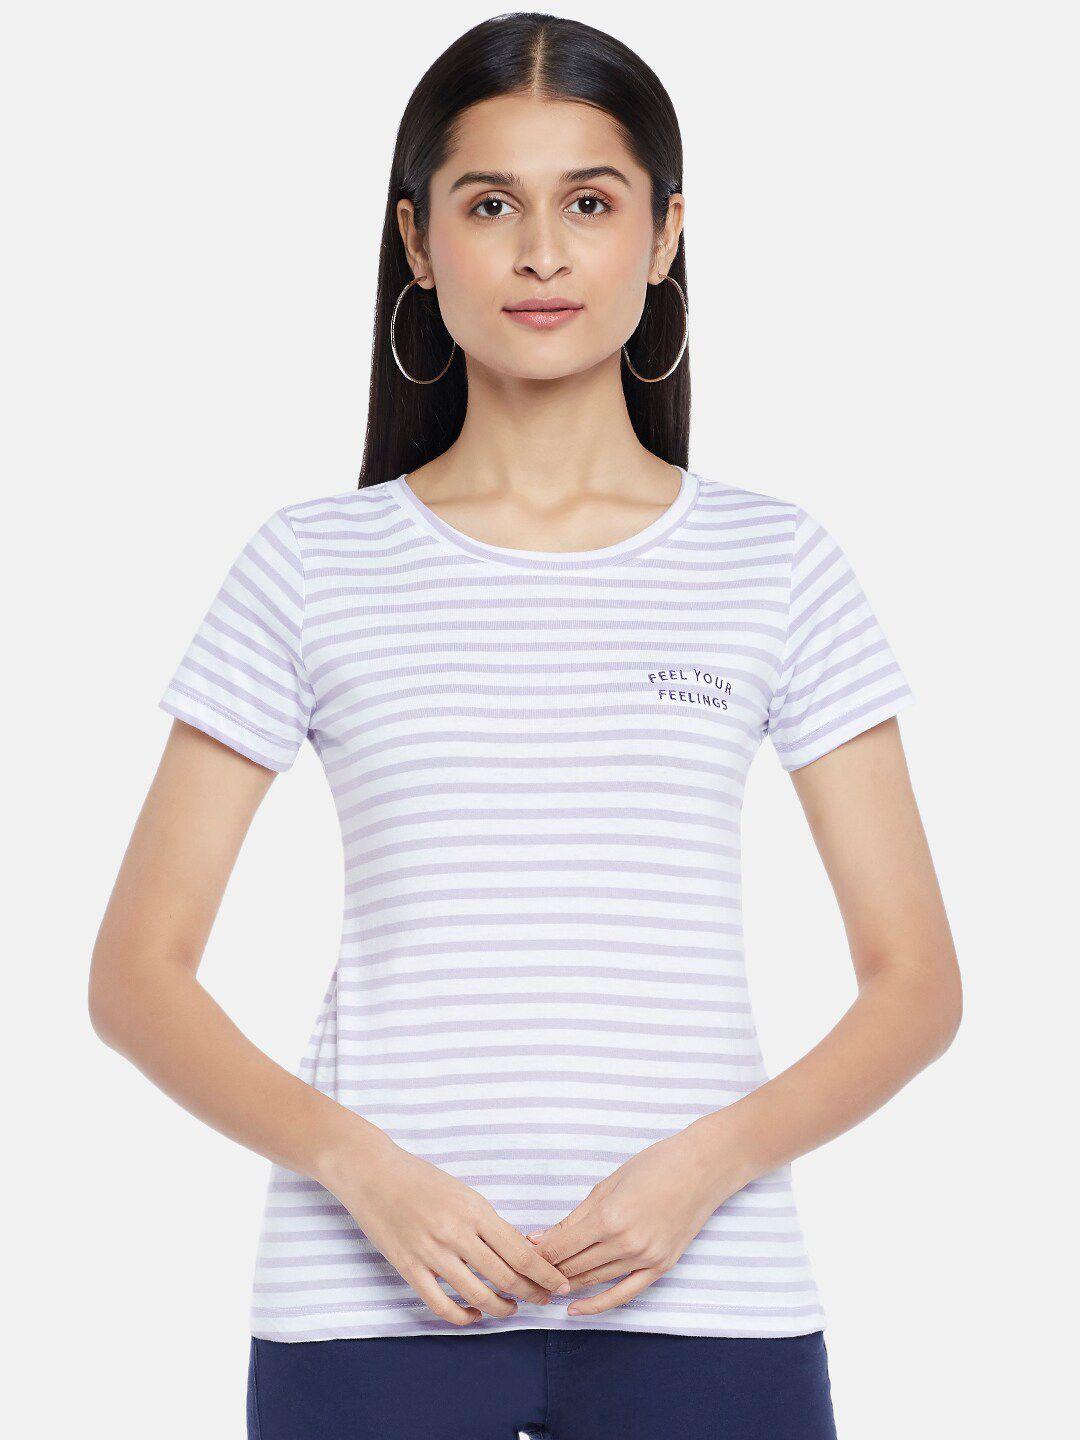 honey by pantaloons women lavender & white striped cotton t-shirt